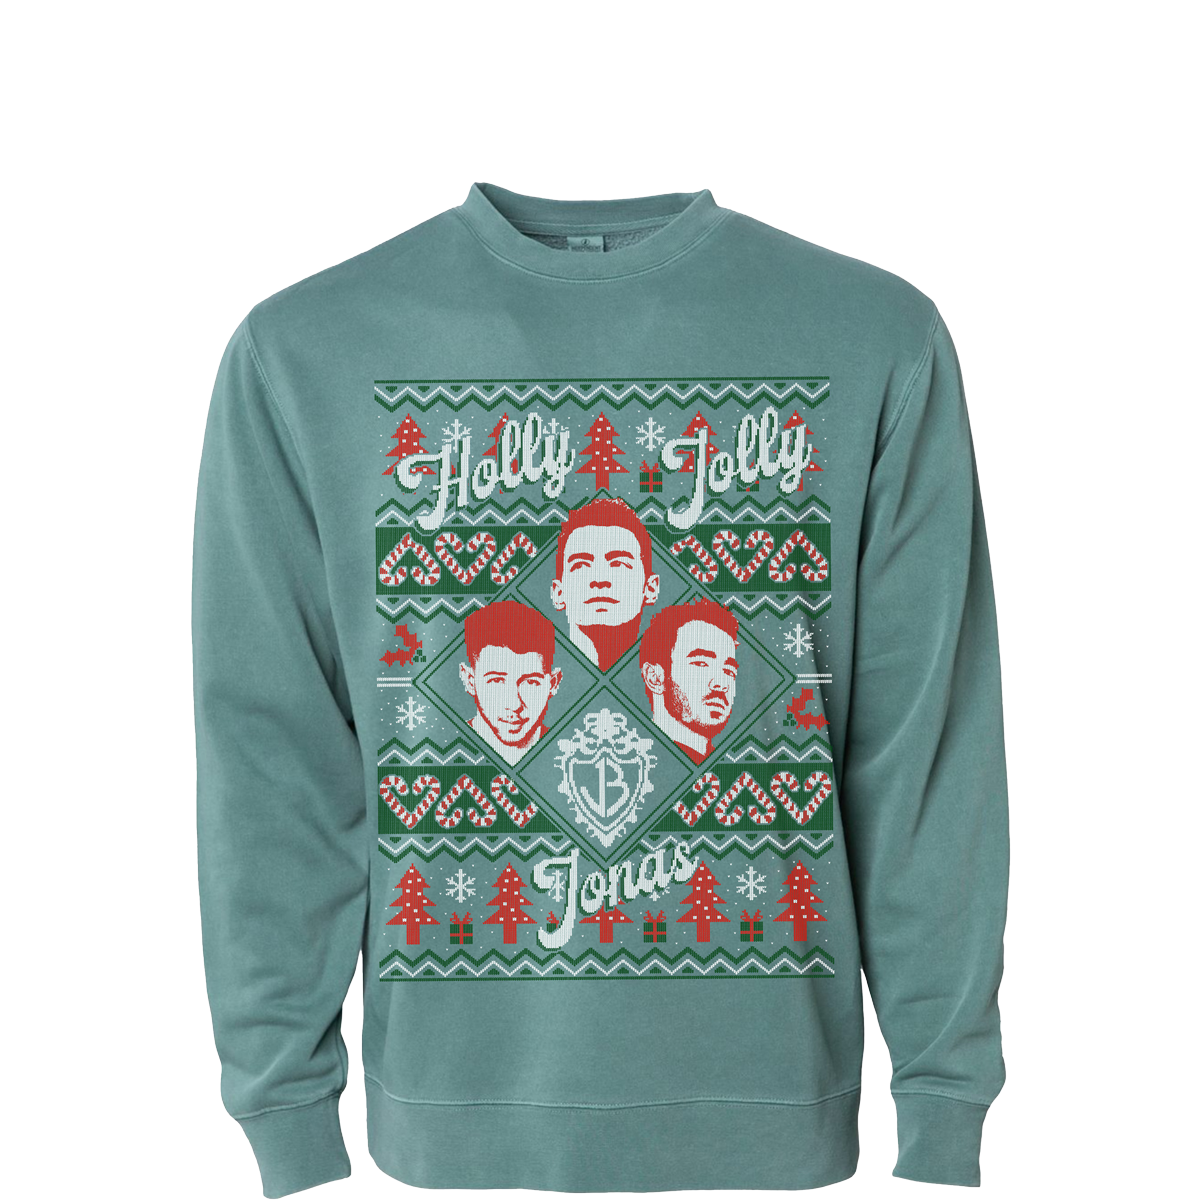 Holly Jolly Jonas Holiday Sweater